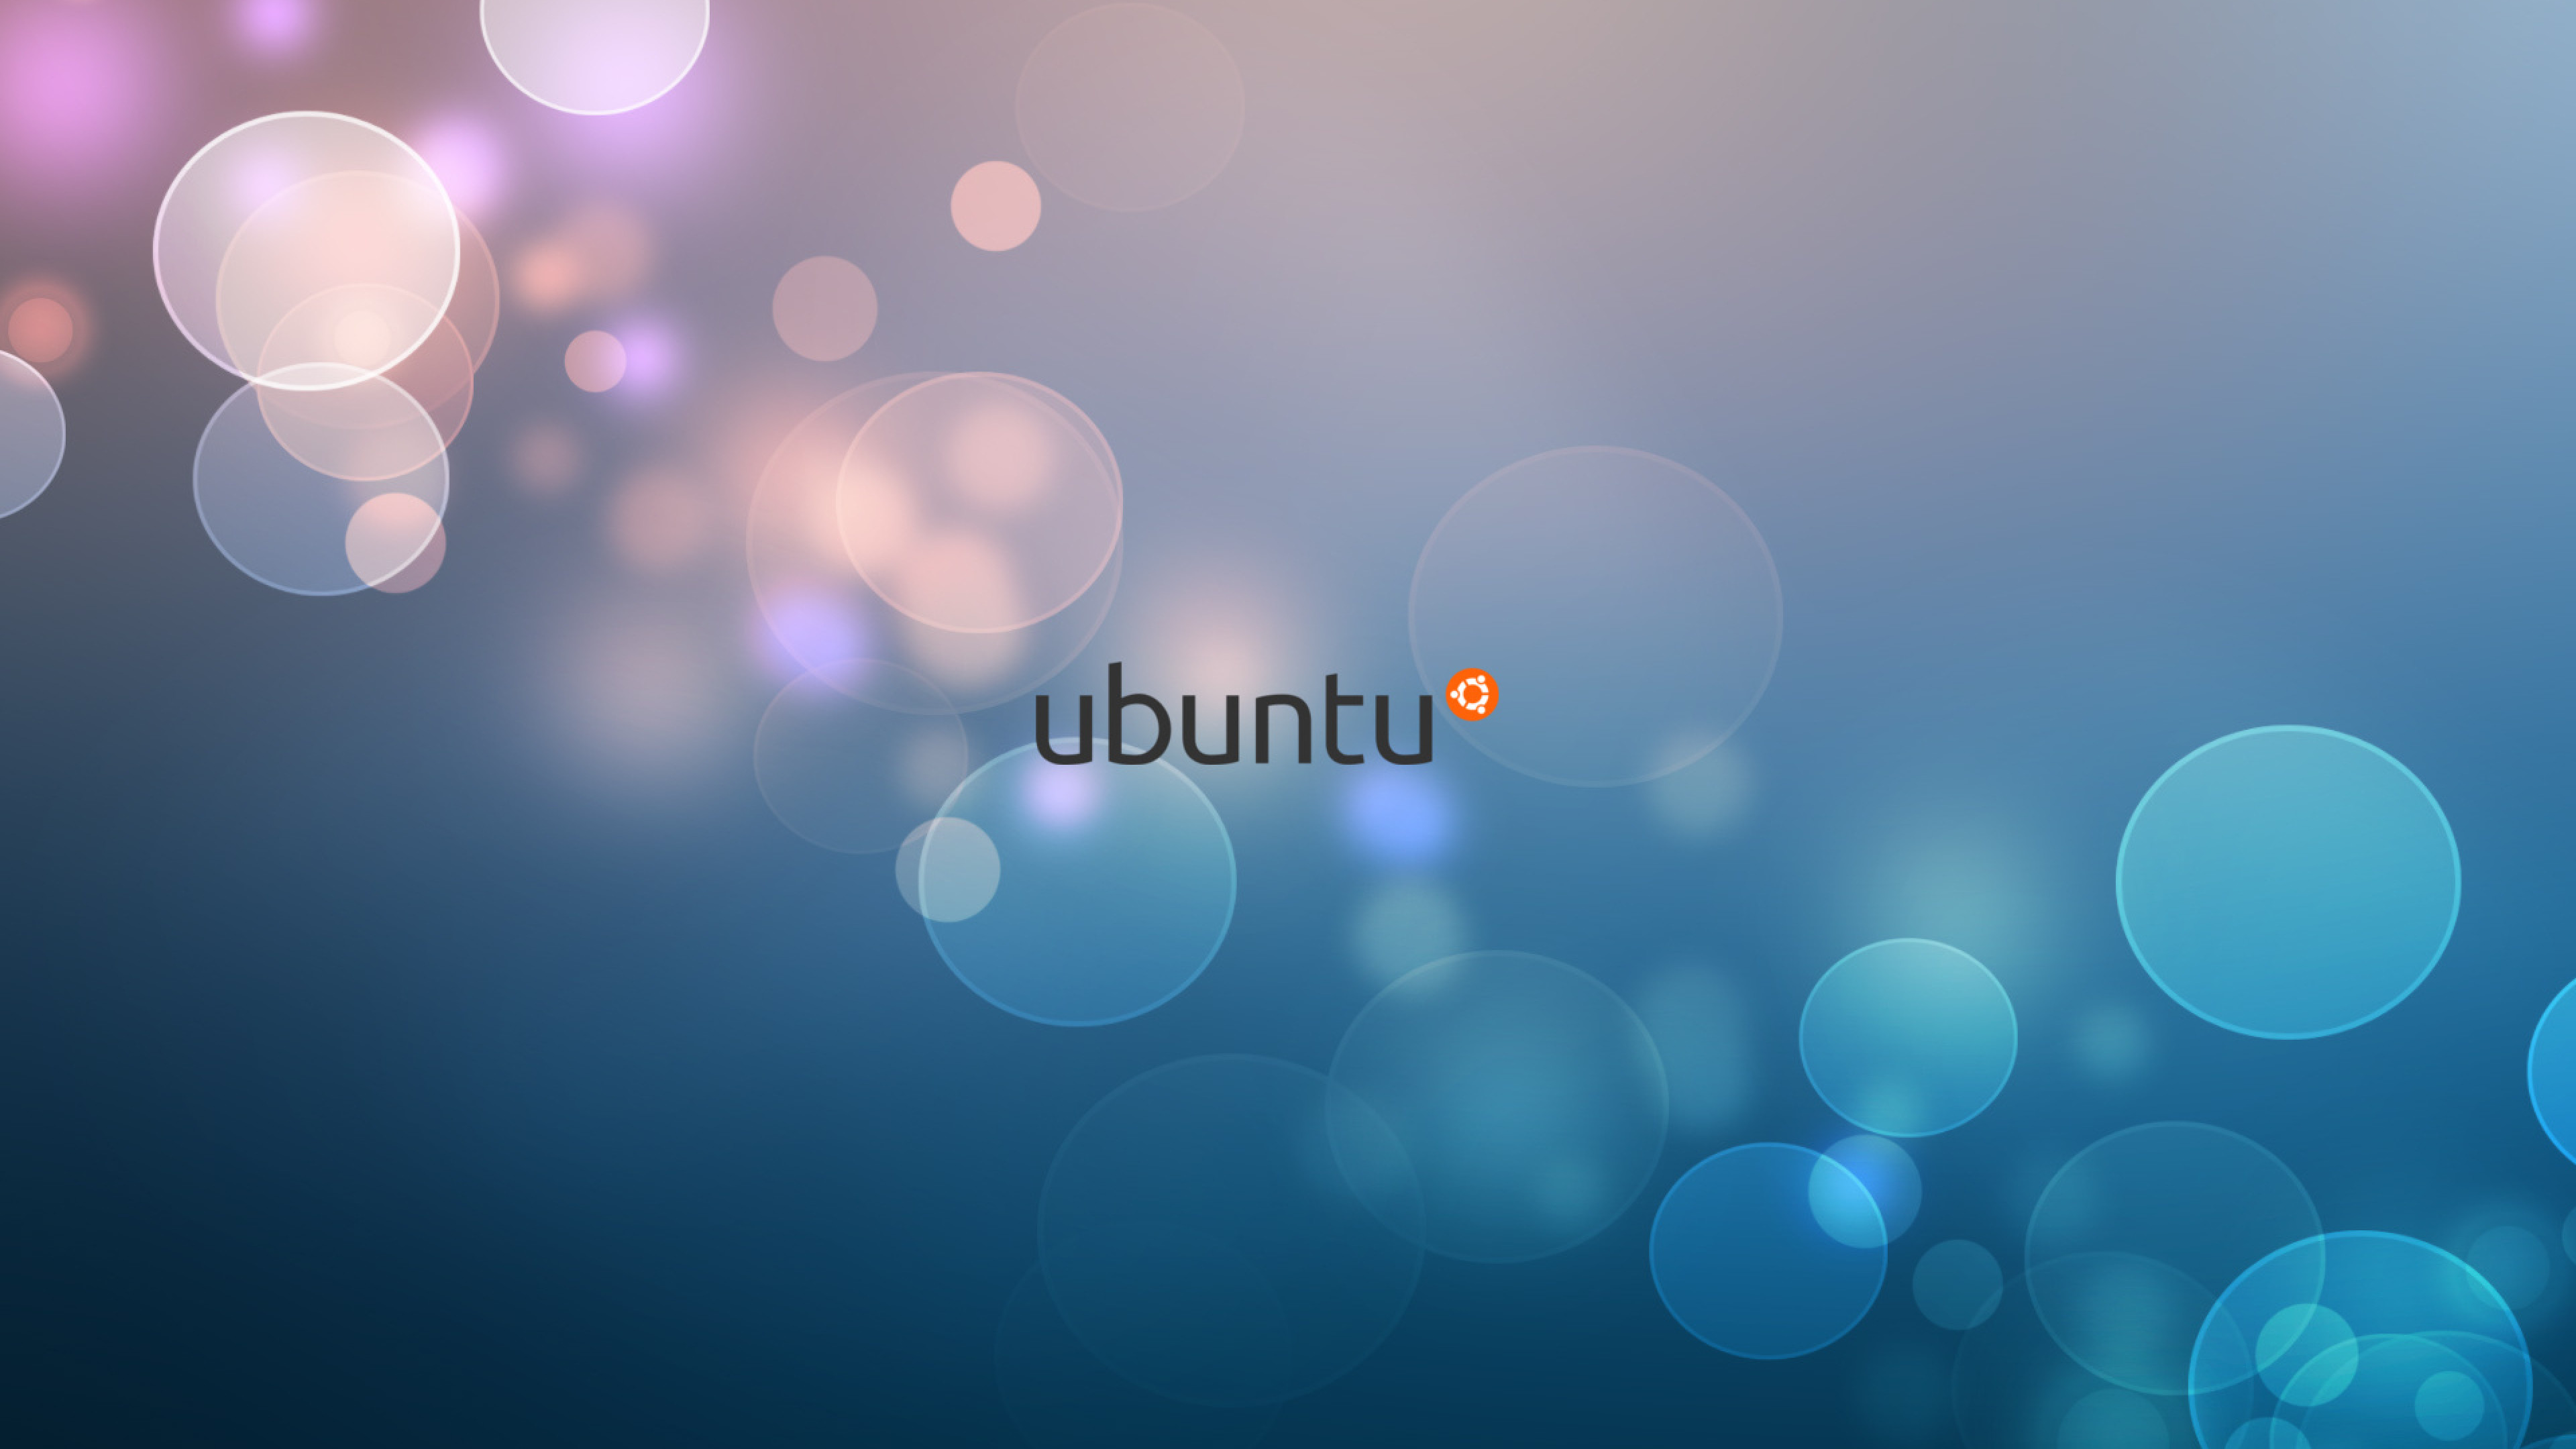 Wallpaper For Ubuntu Image